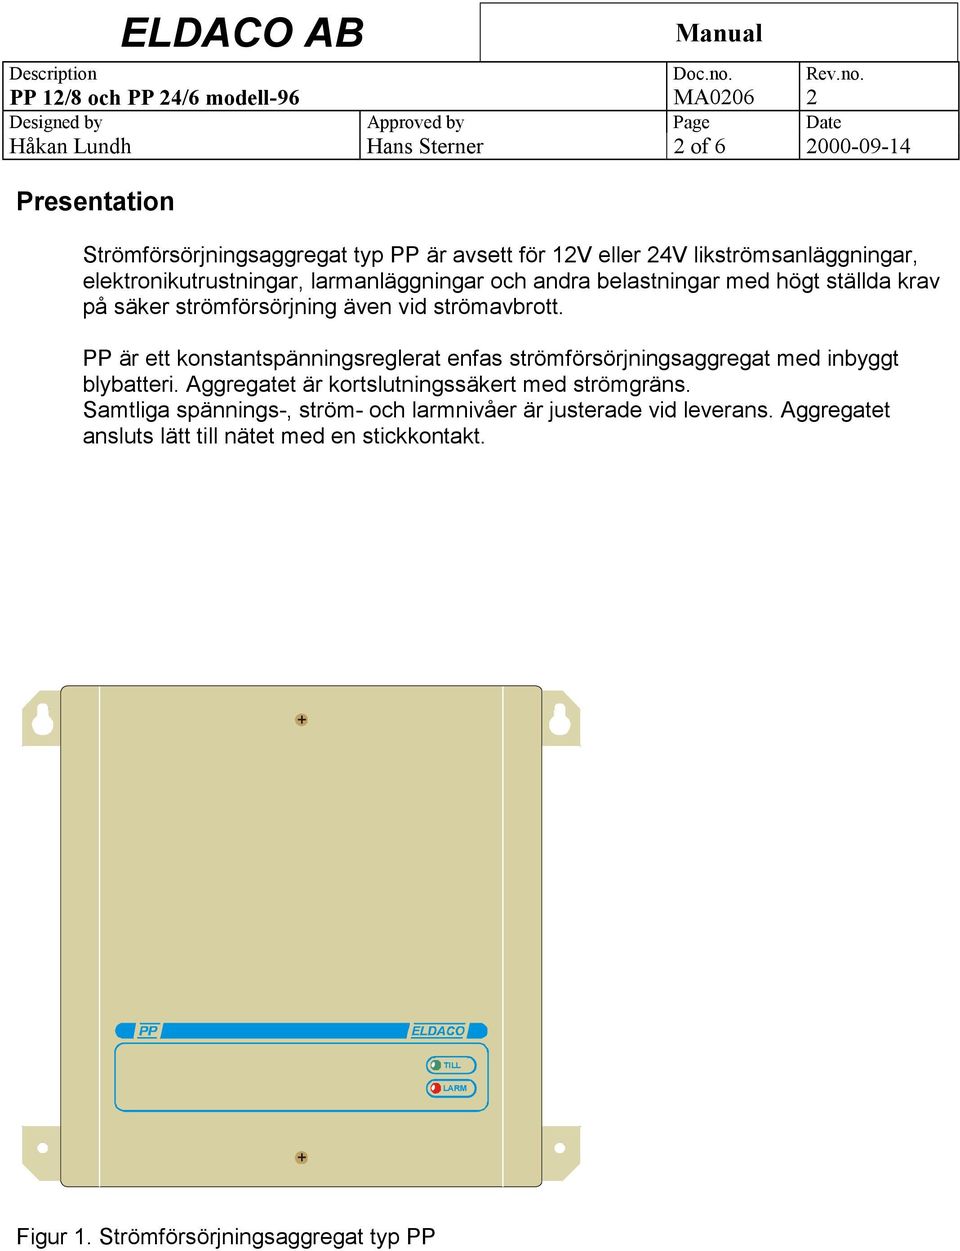 PP är ett konstantspänningsreglerat enfas strömförsörjningsaggregat med inbyggt blybatteri. Aggregatet är kortslutningssäkert med strömgräns.